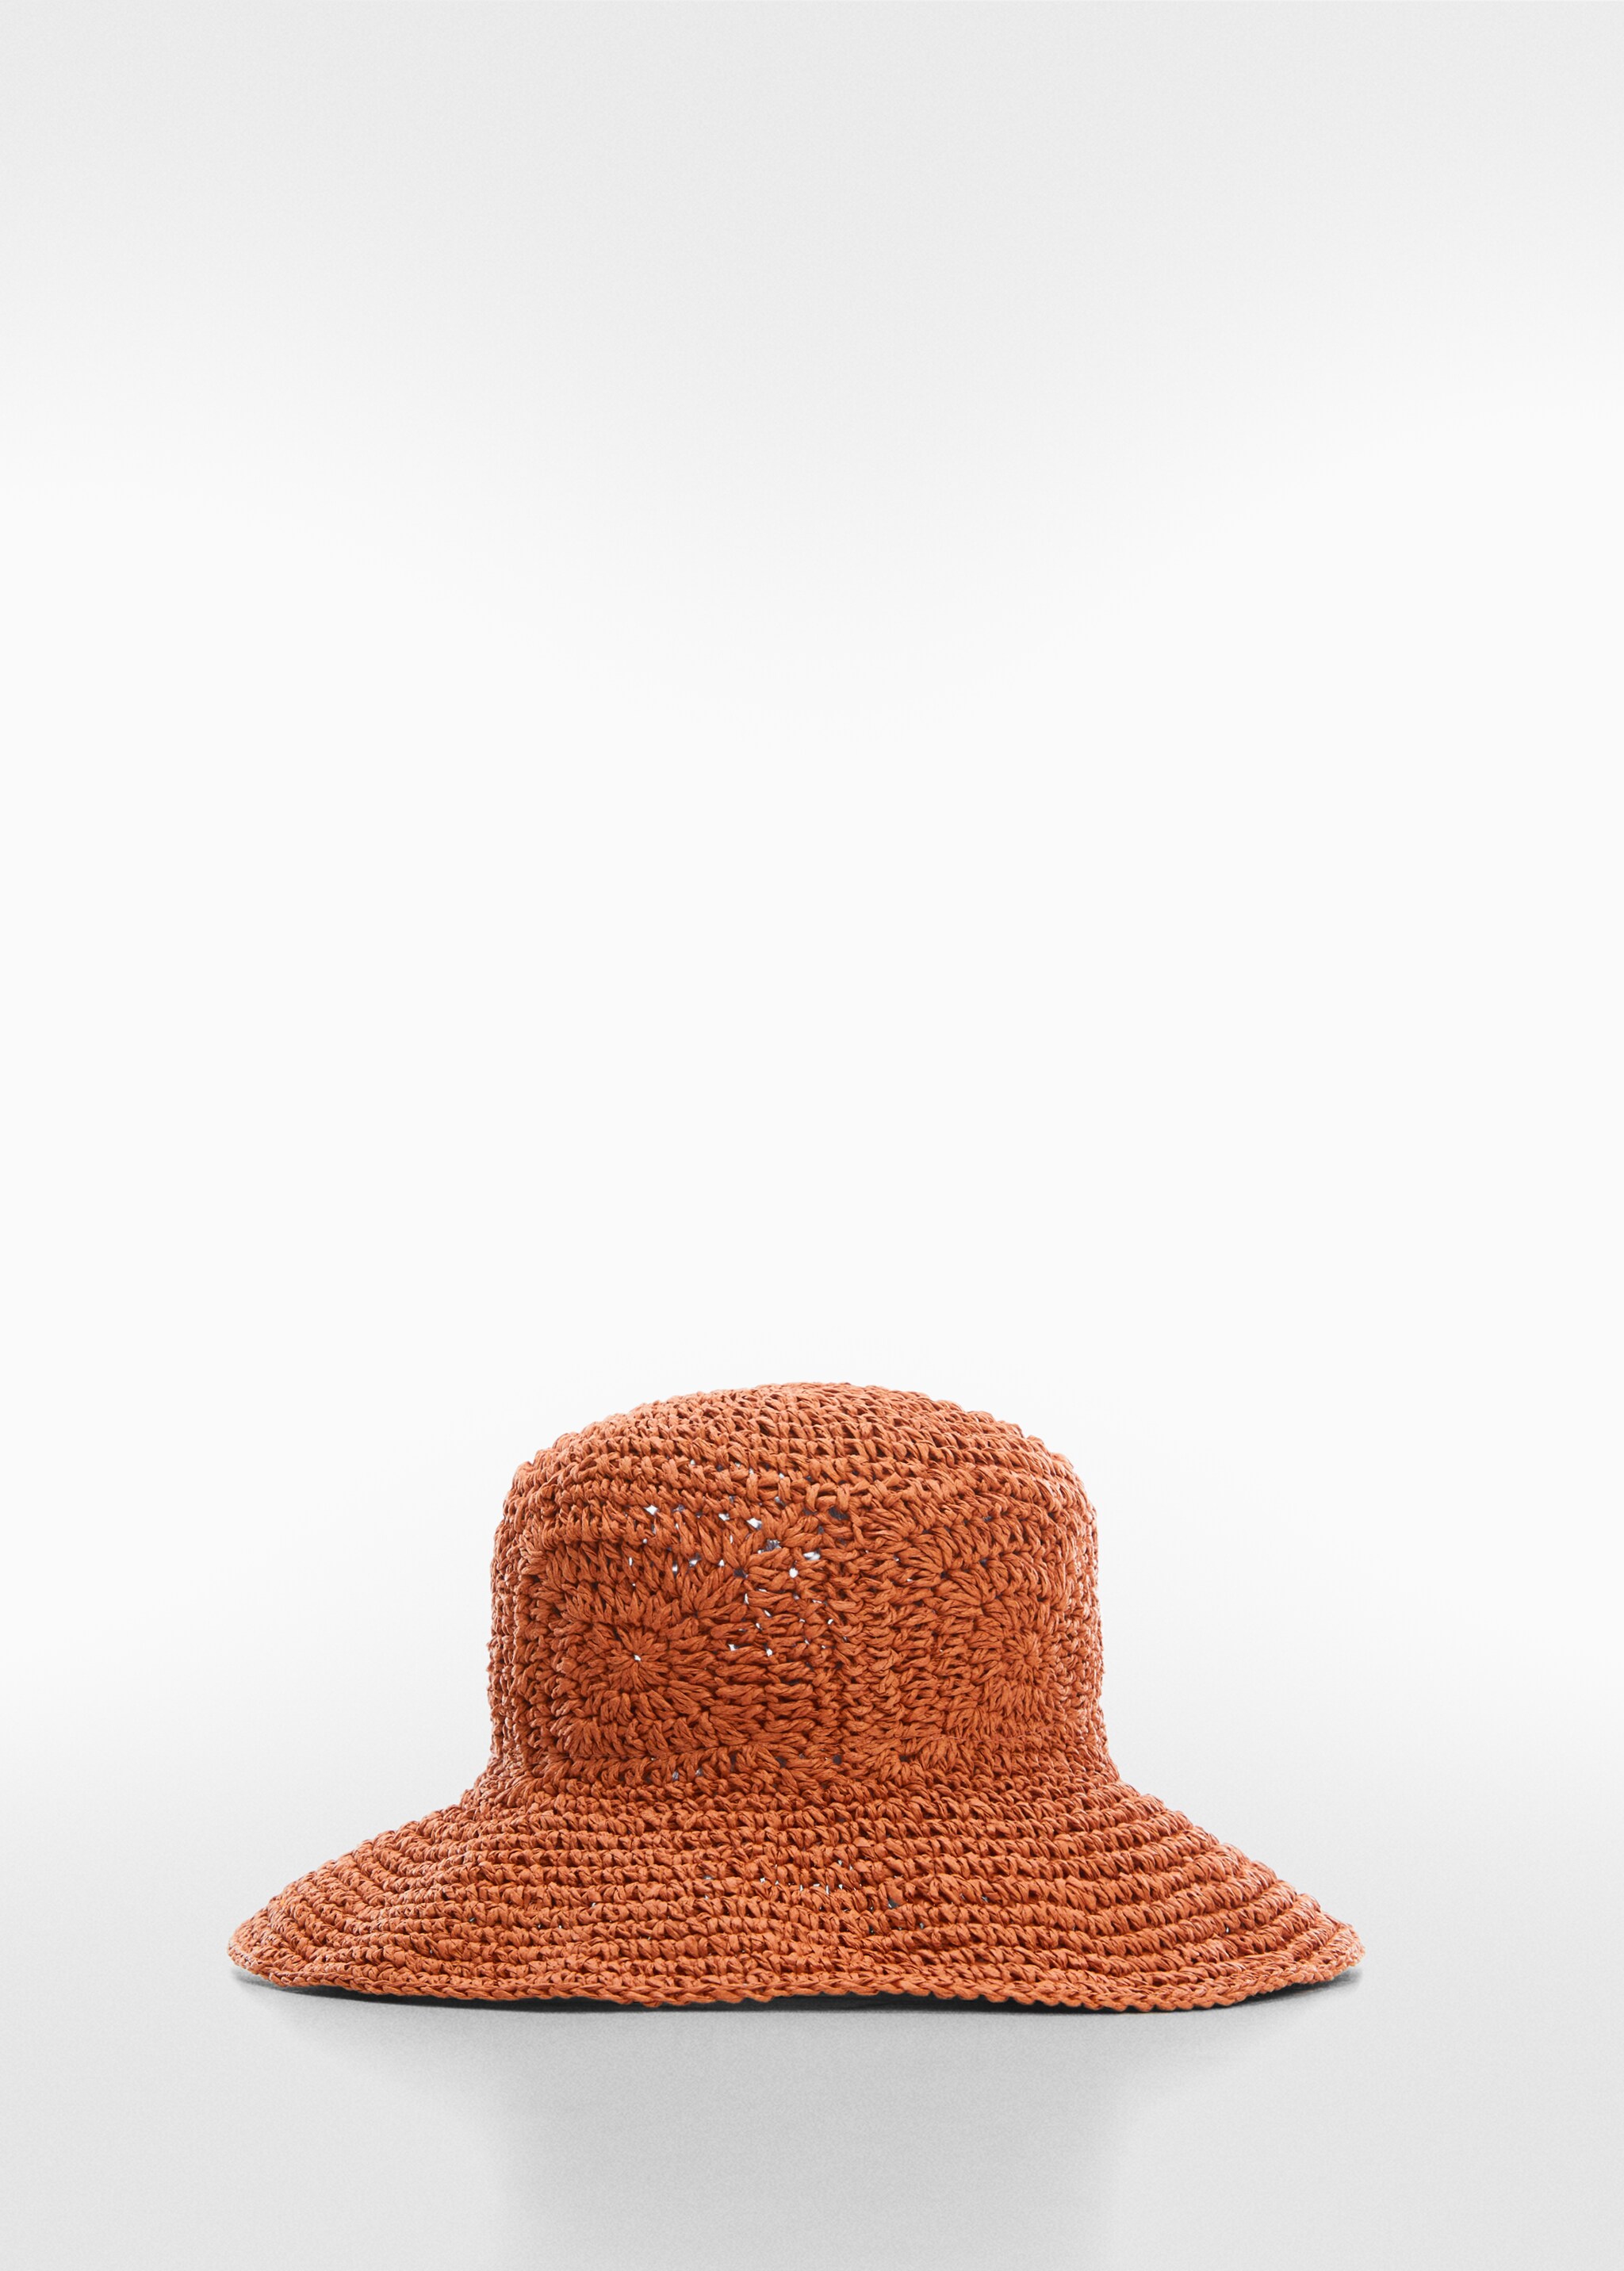 Cappello fibra naturale crochet - Articolo senza modello